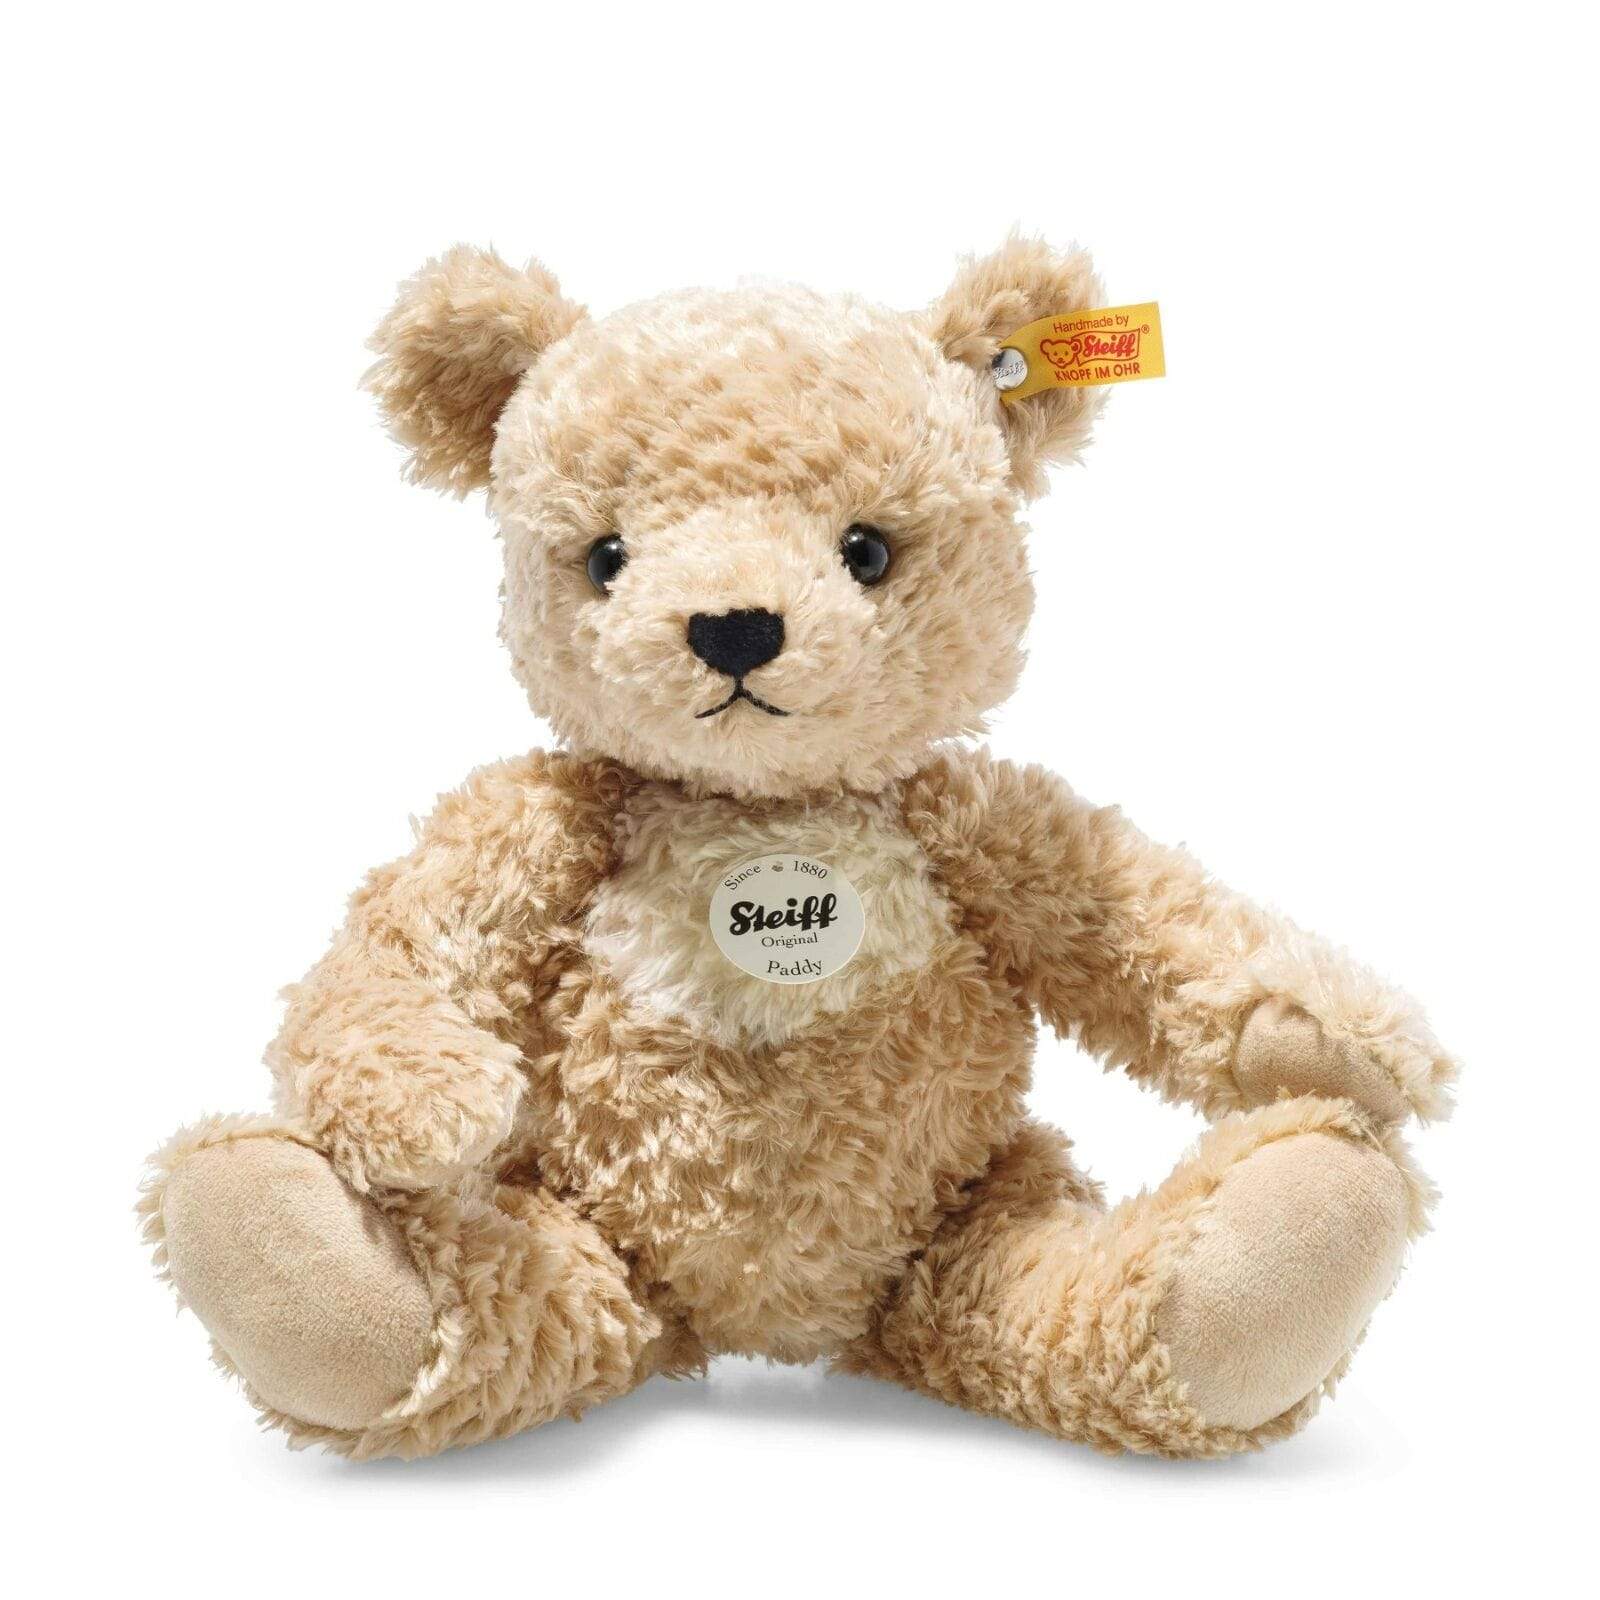 Steiff teddy bears Steiff Paddy Teddy Bear 30cm Golden Brown 014253